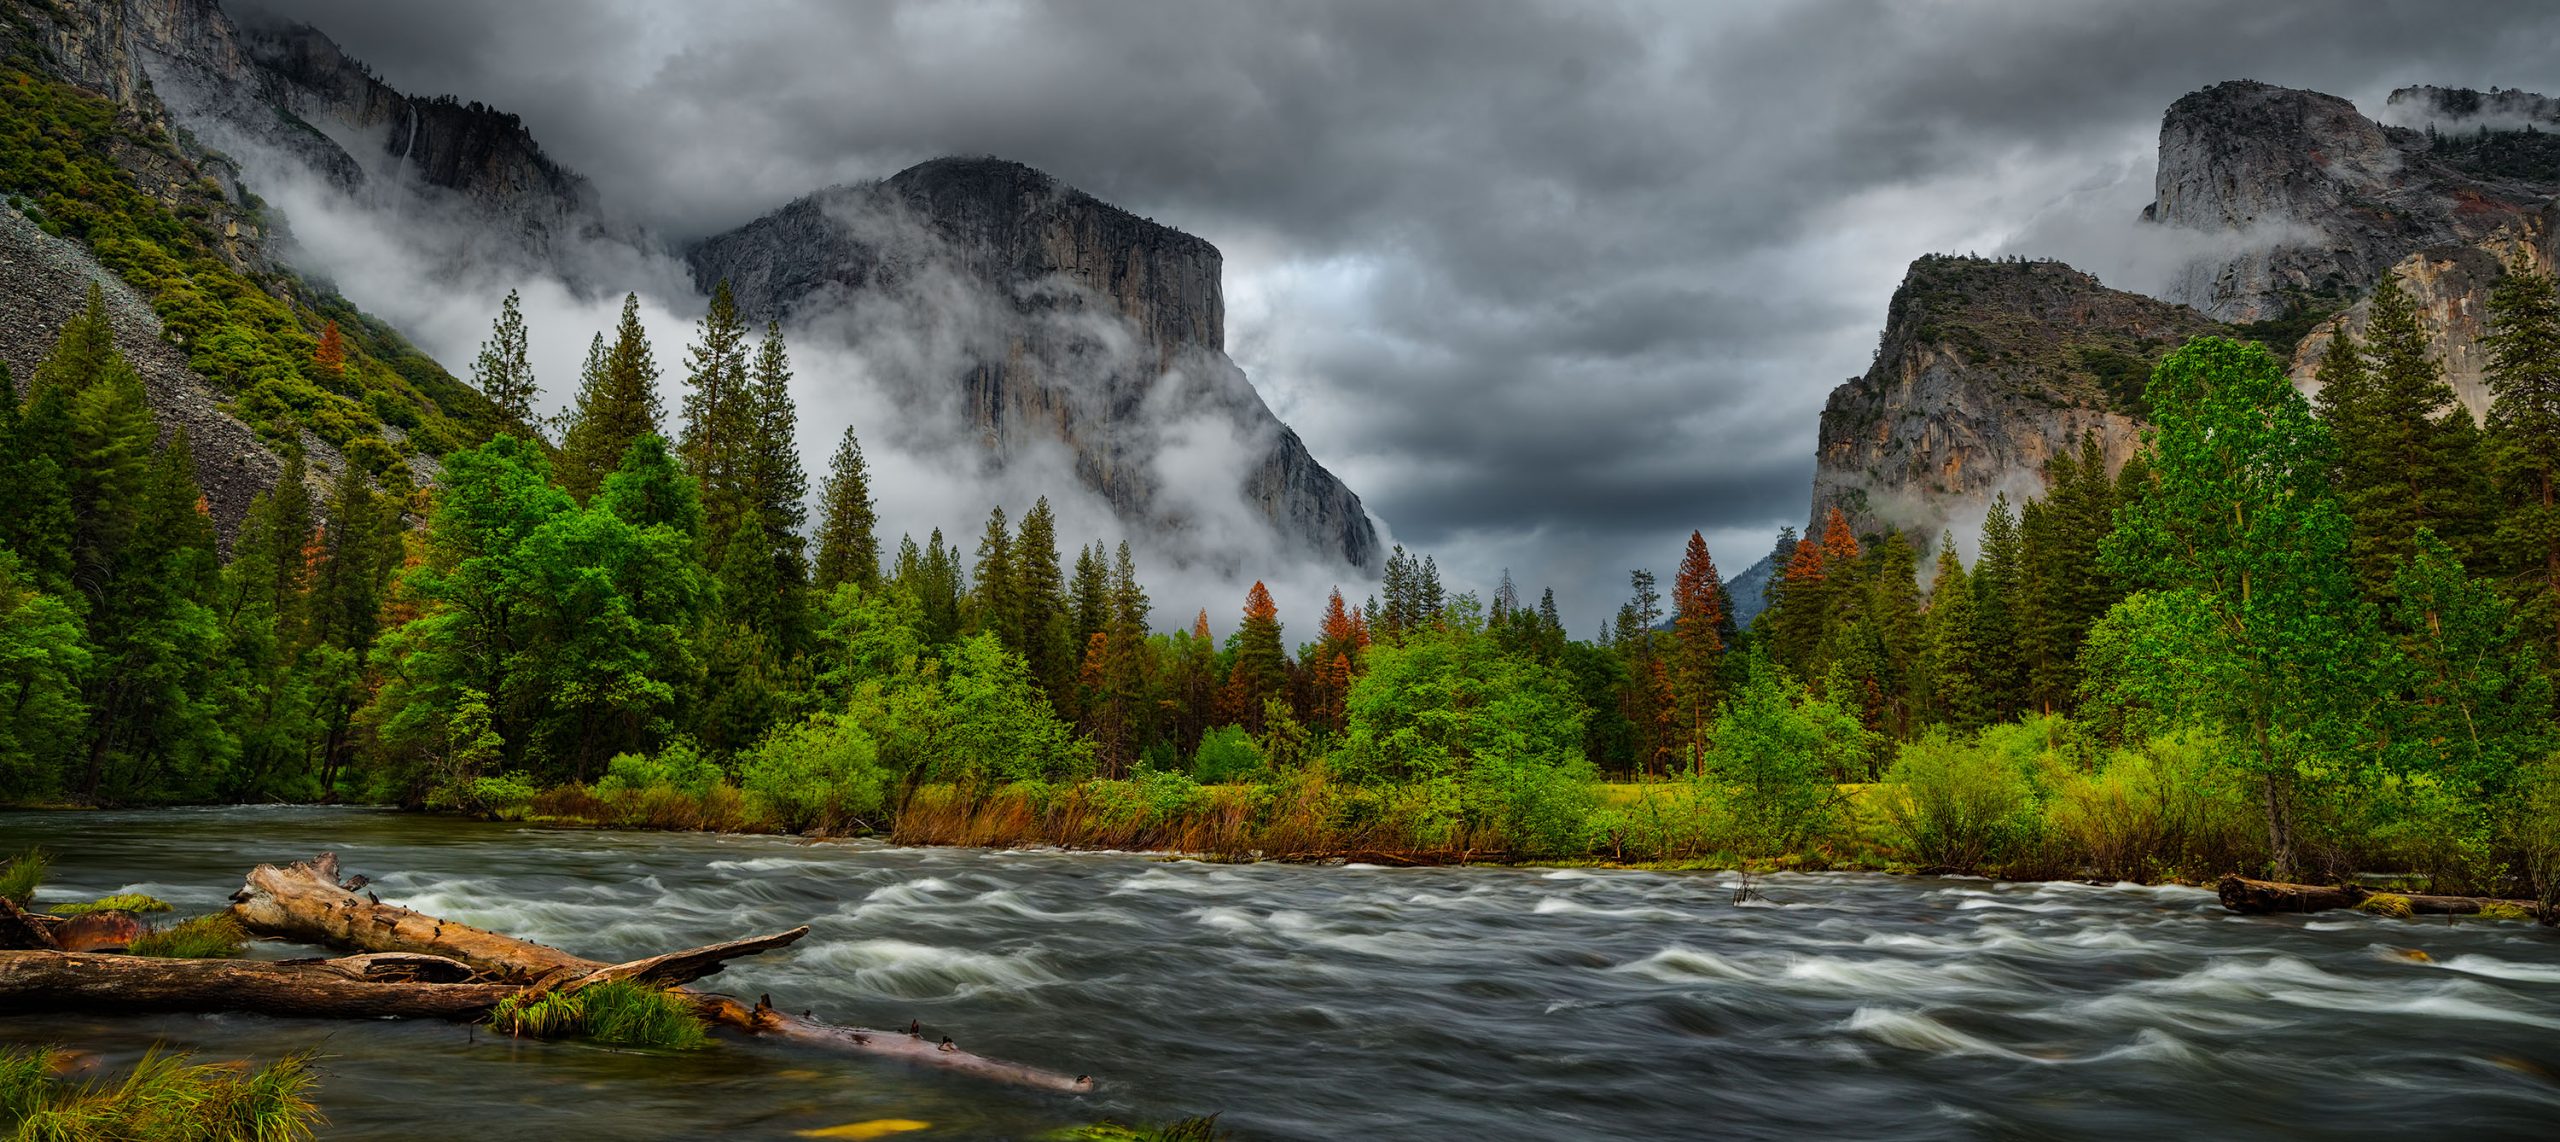 Yosemite photography workshops